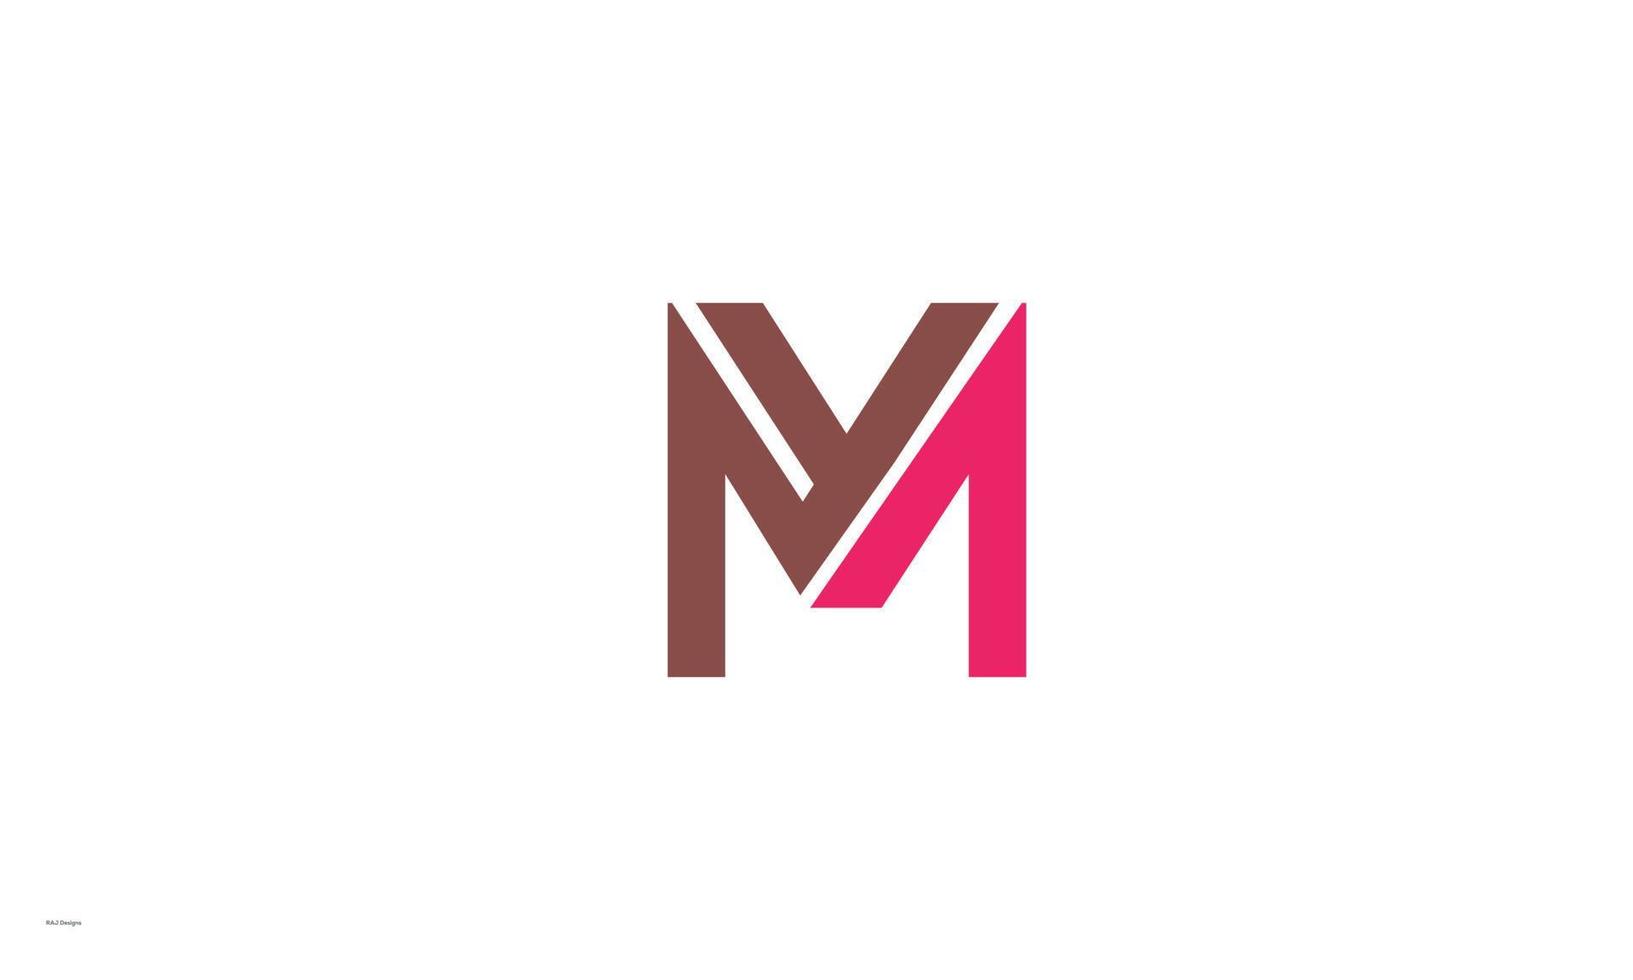 alfabeto letras iniciales monograma logo ym, my, y y m vector